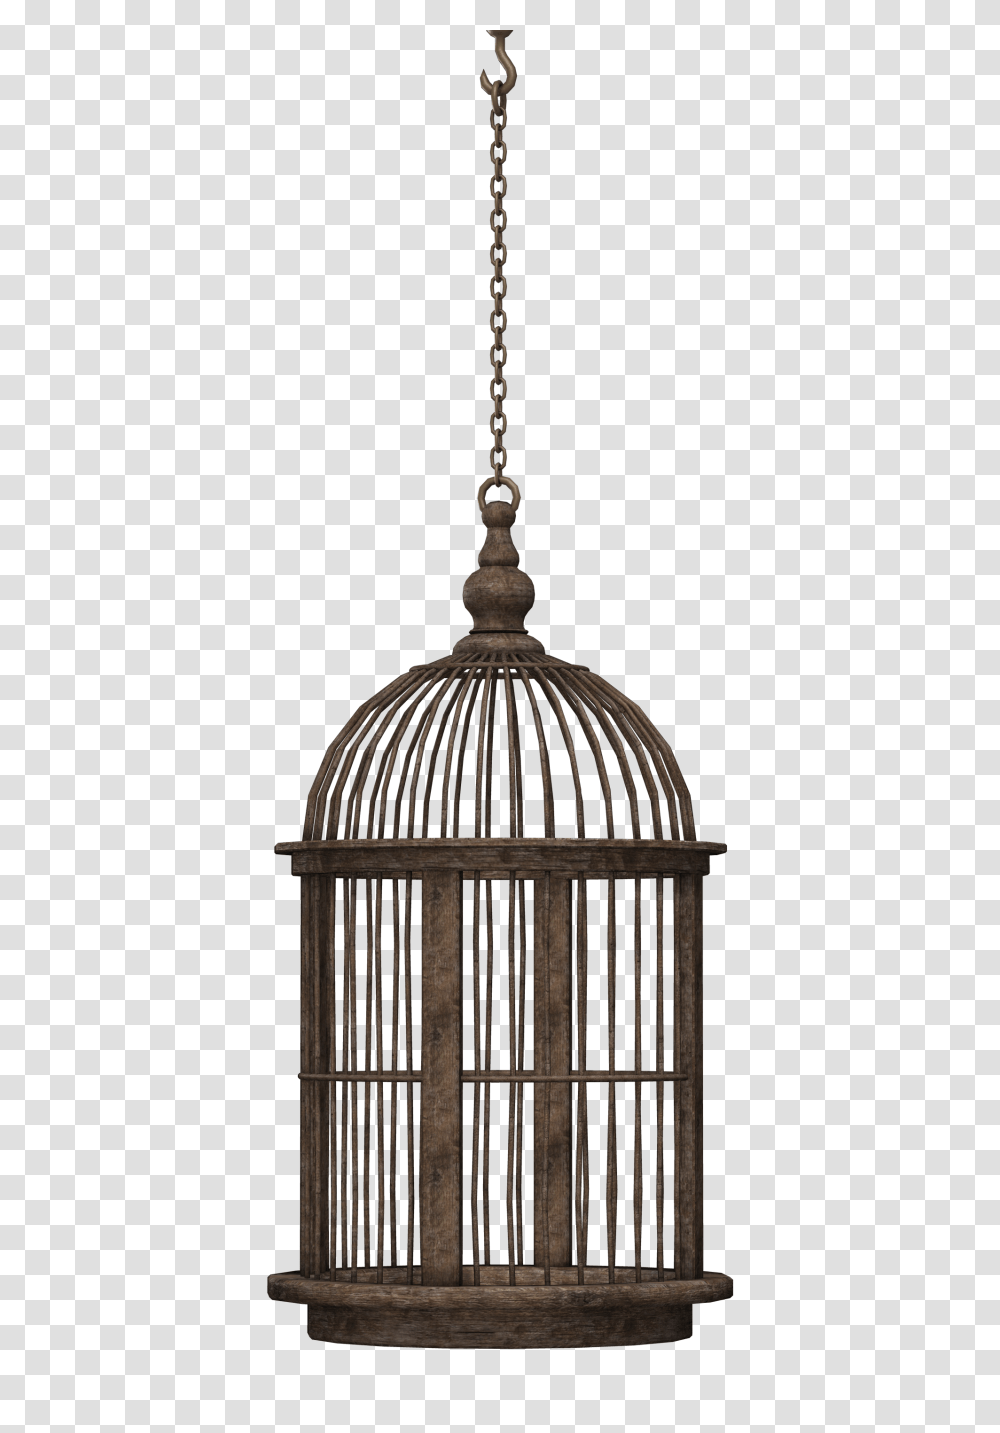 Bird Cage Image, Lamp, Light Fixture, Cylinder Transparent Png